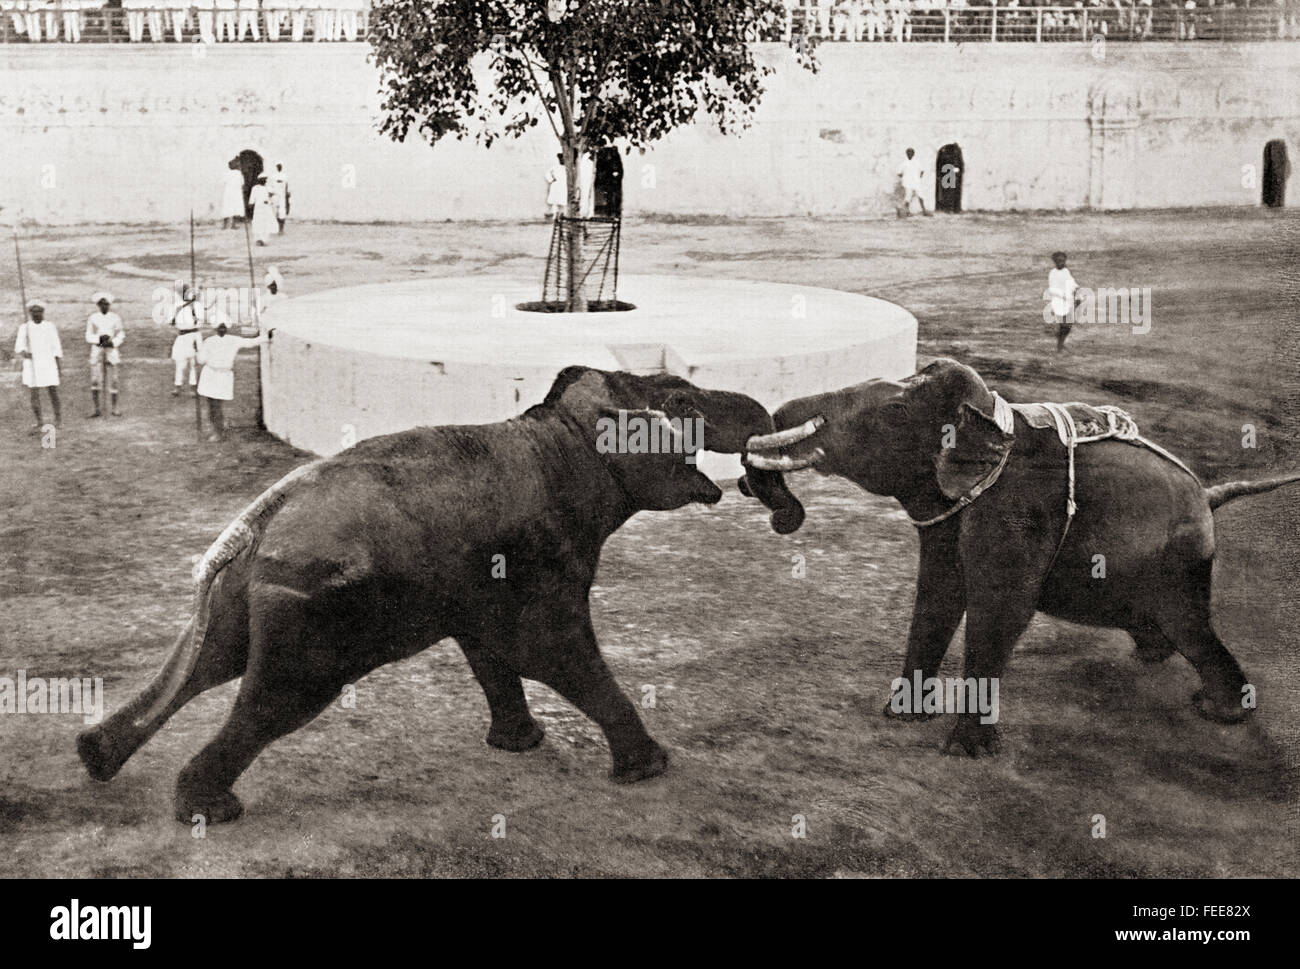 La lutte contre les éléphants. Leurs défenses ont été raccourcis par leurs formateurs. Le sud de l'Inde au 19e siècle. Banque D'Images